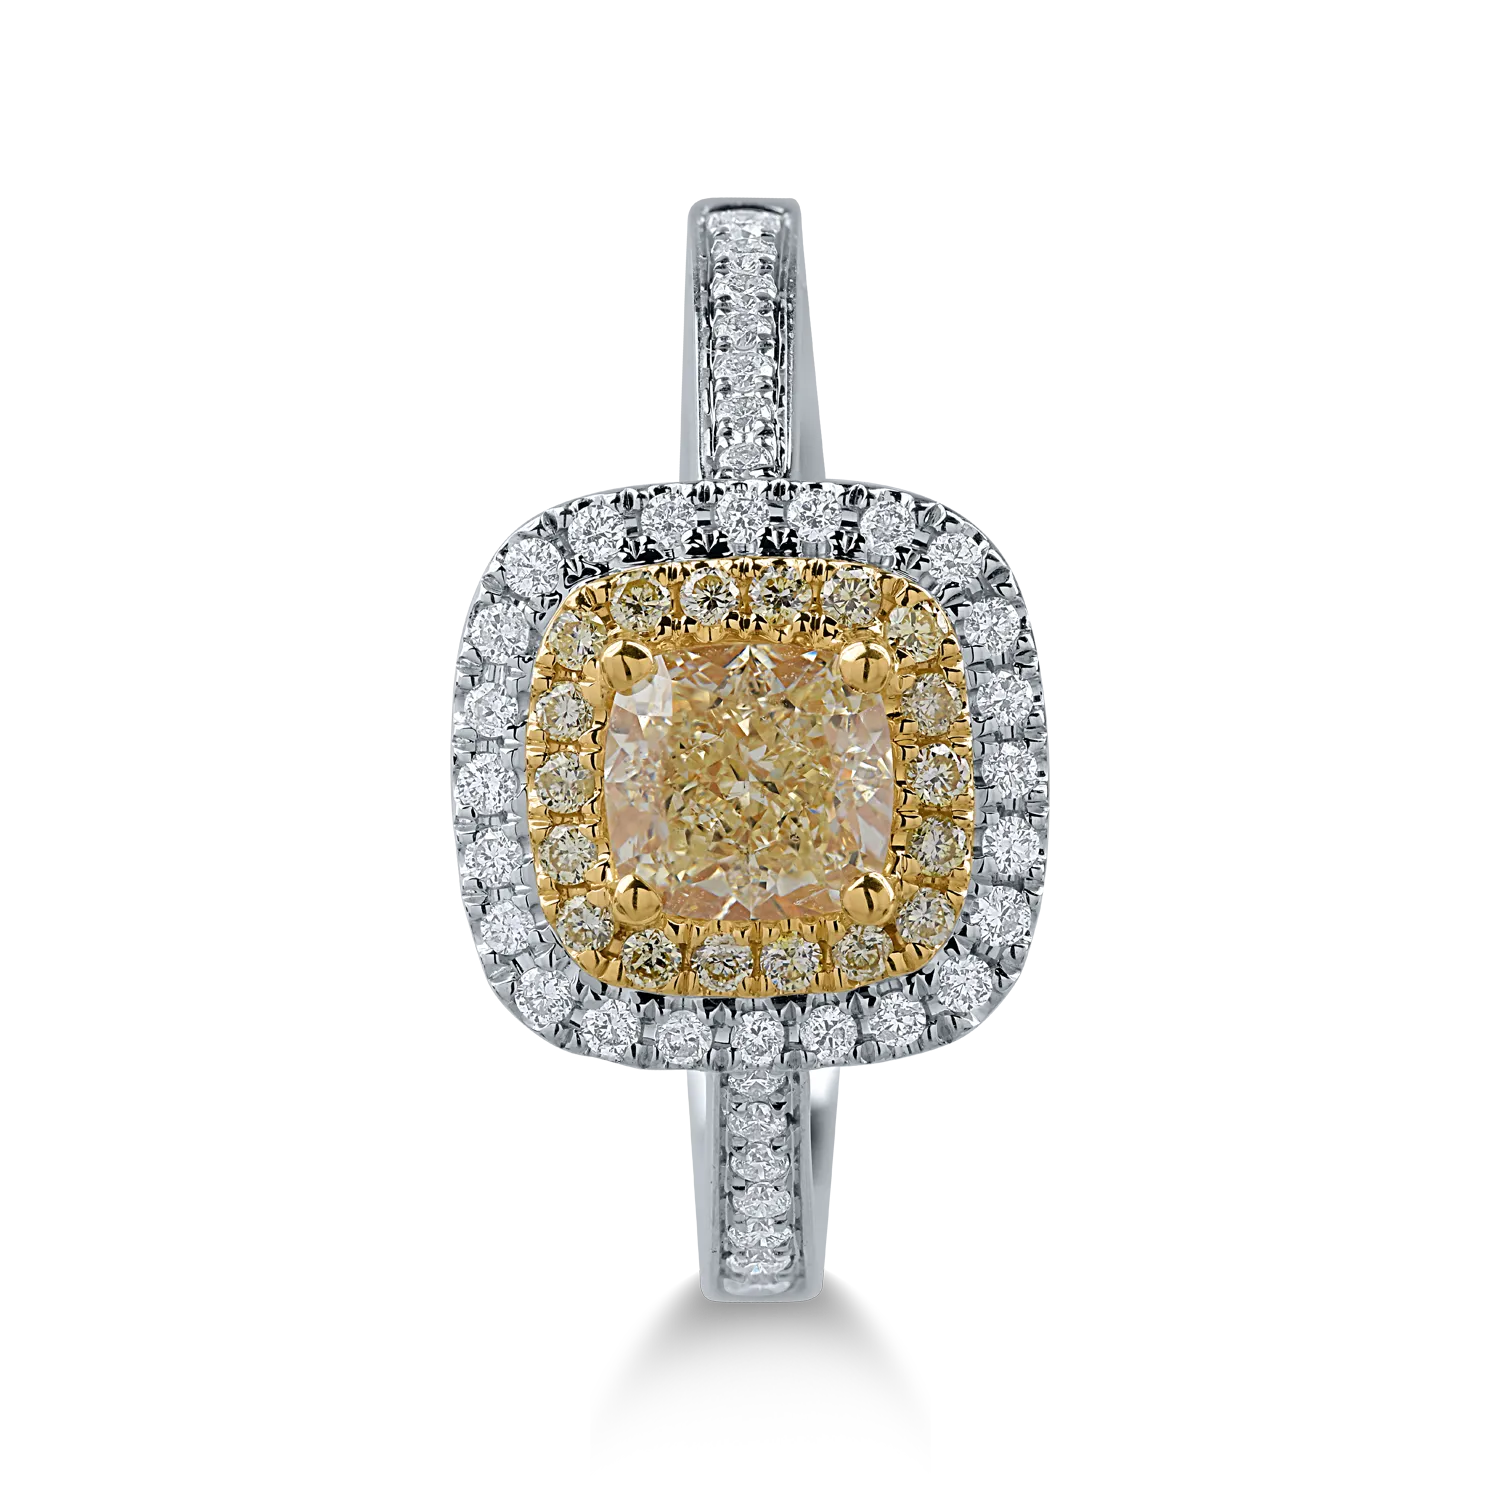 Pierścionek z biało-żółtego złota z żółtymi diamentami o masie 0.96ct i przezroczystymi diamentami o masie 0.21ct